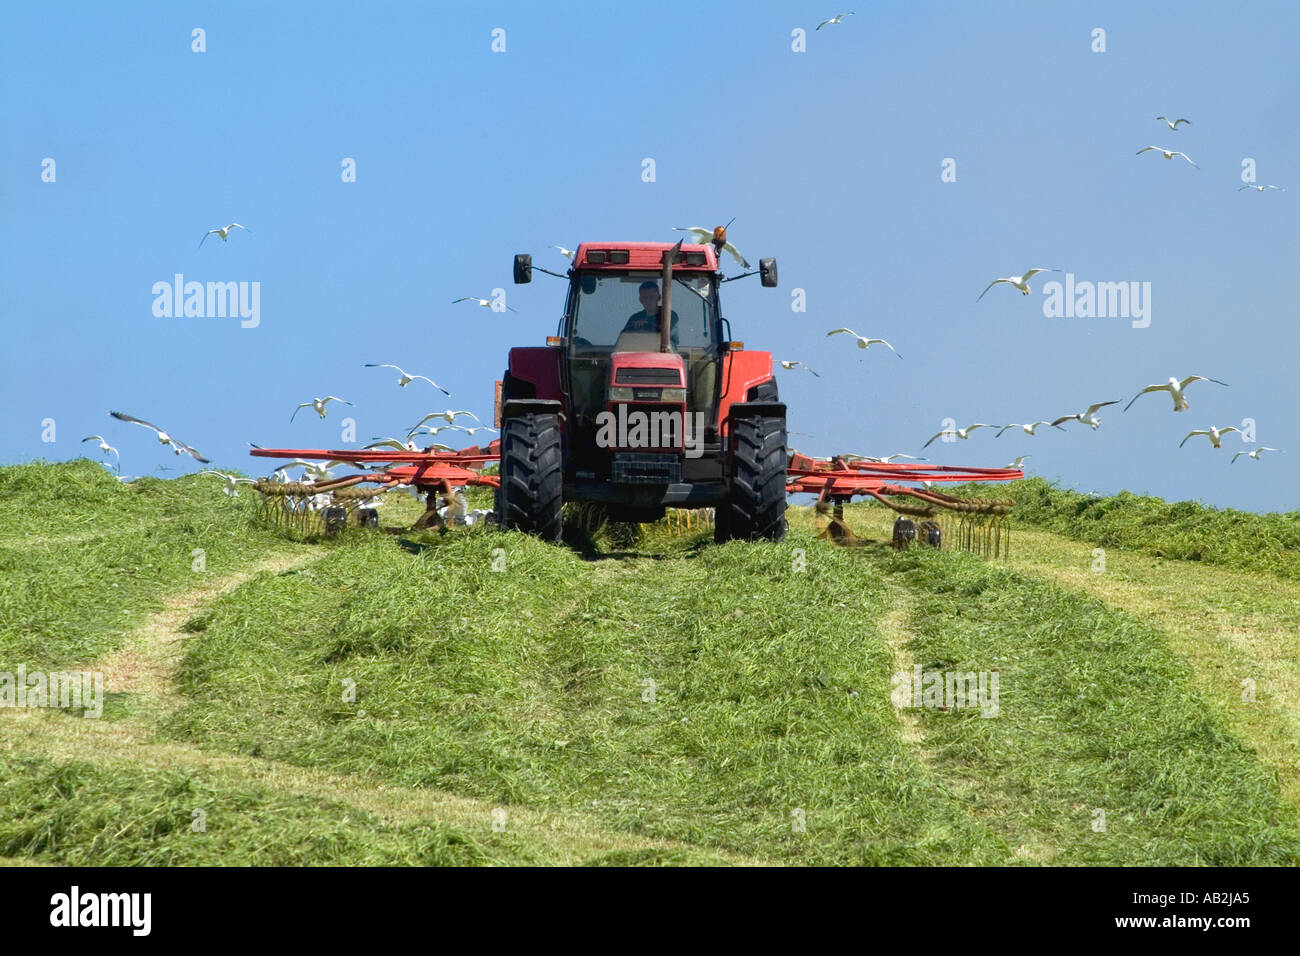 dh Traktor Harken Silage ERNTE UK Gras für die Ernte Möwen Fütterung Scharen Vögel Ackerland in schottland Landwirtschaft Stockfoto